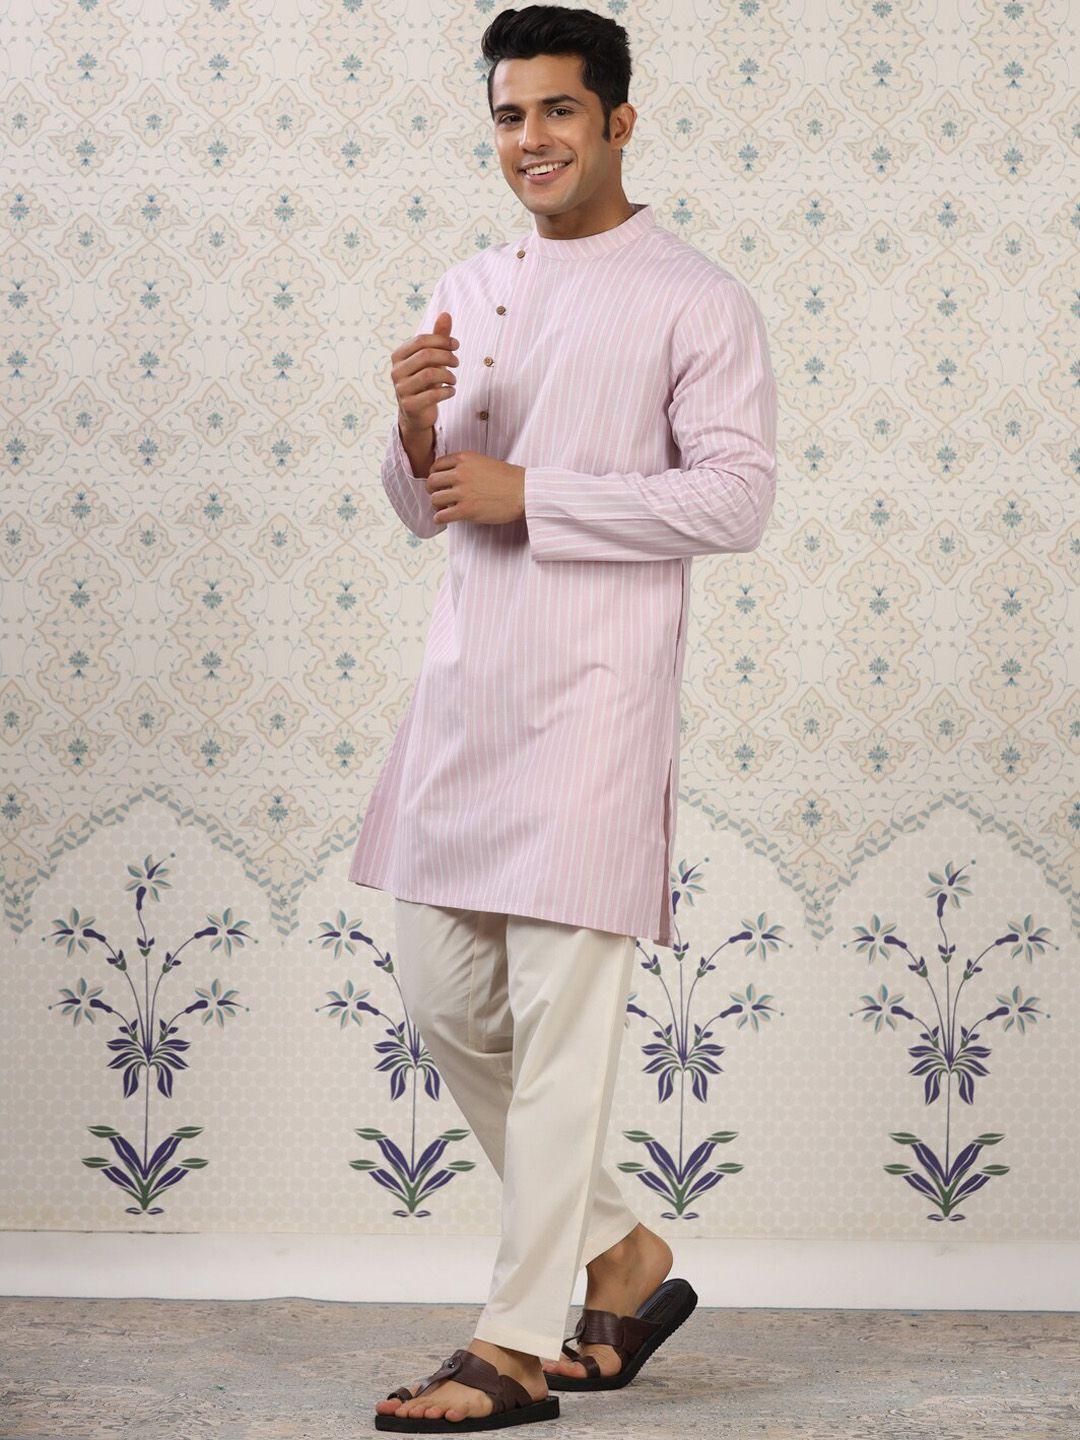 ode by house of pataudi pink & white striped kurta with pyjamas